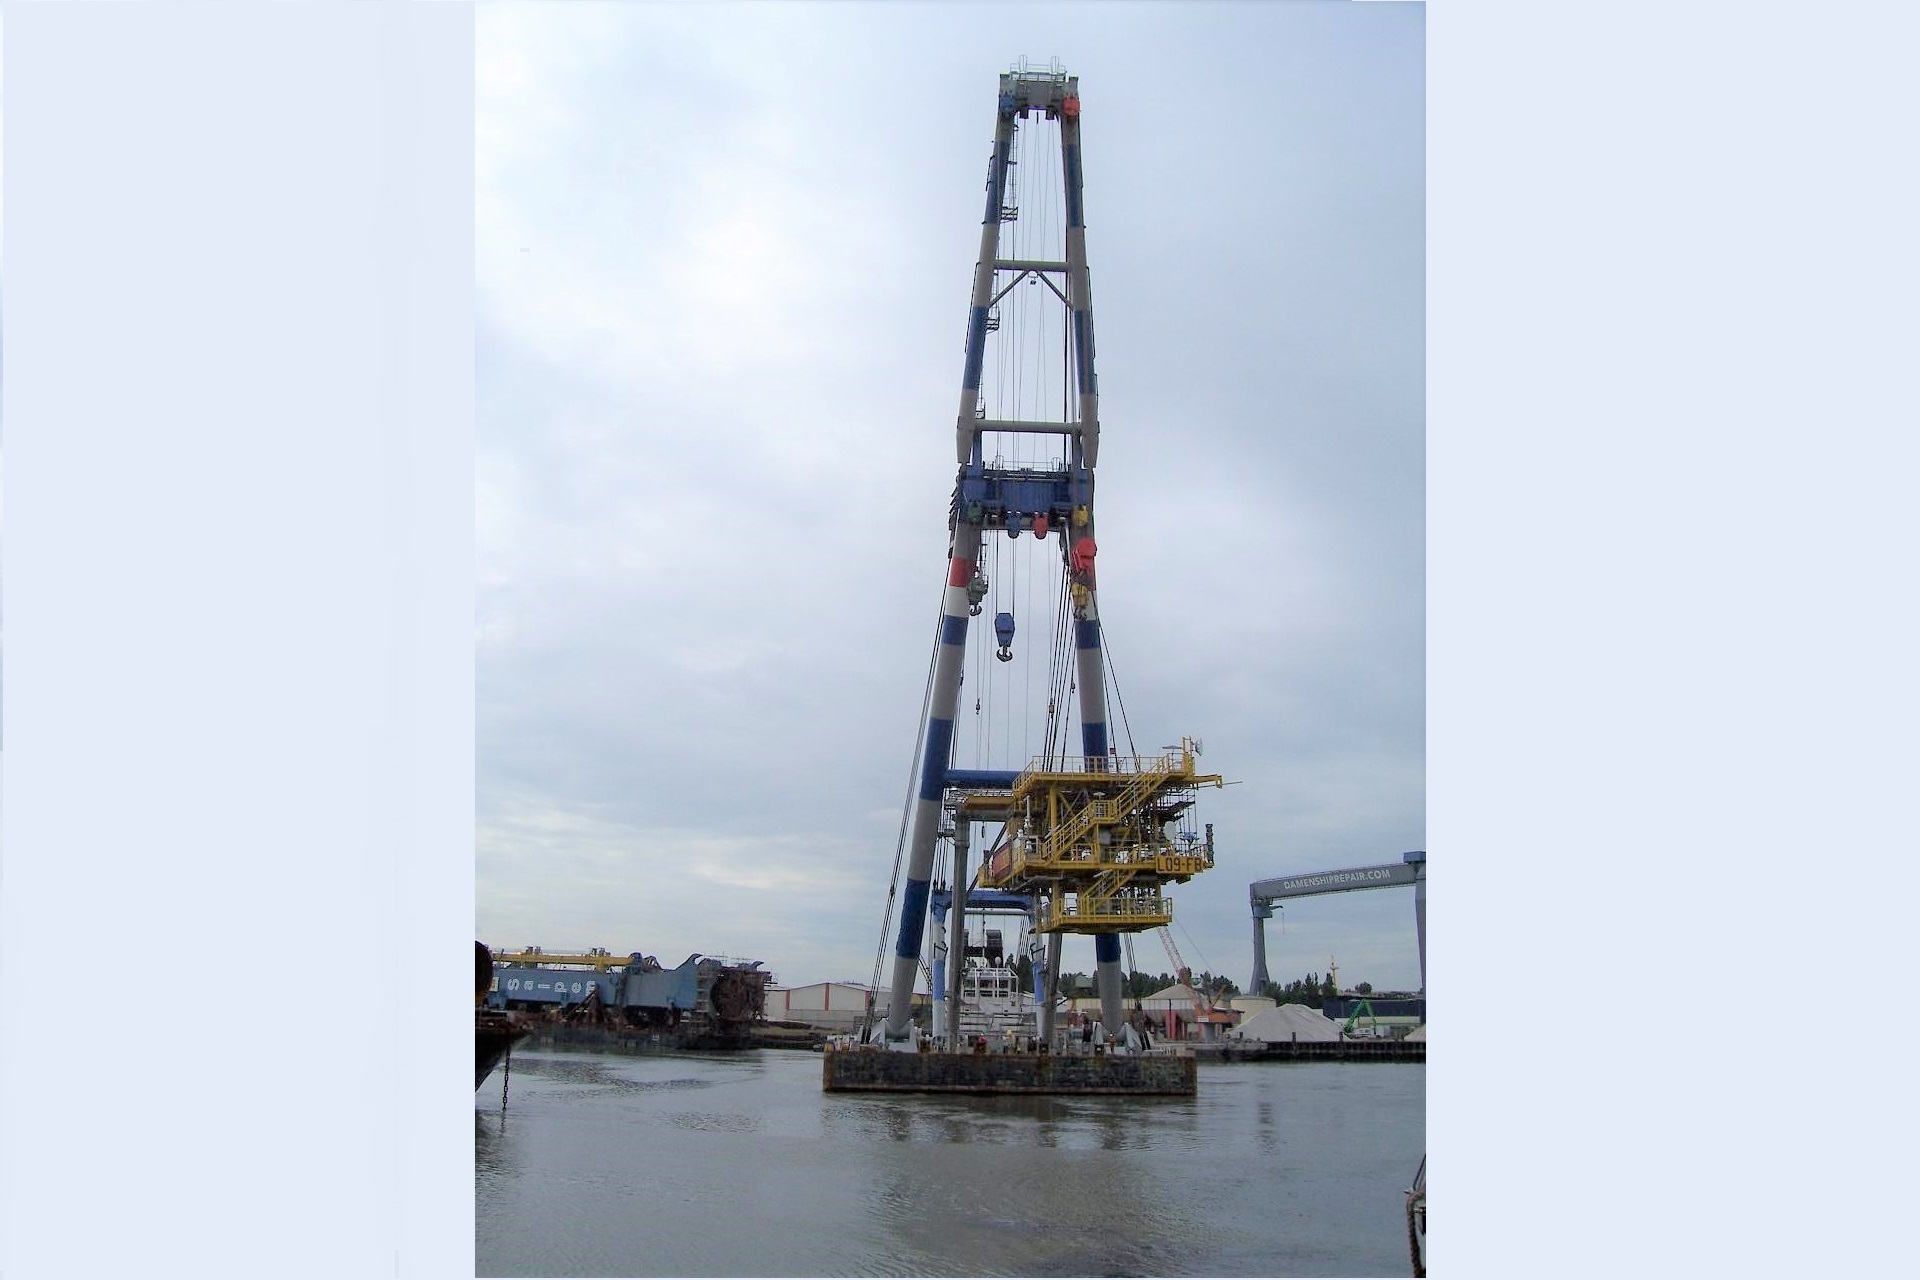 Unmanned North Sea monopile platform Harbour Lift - JB v Doesburg